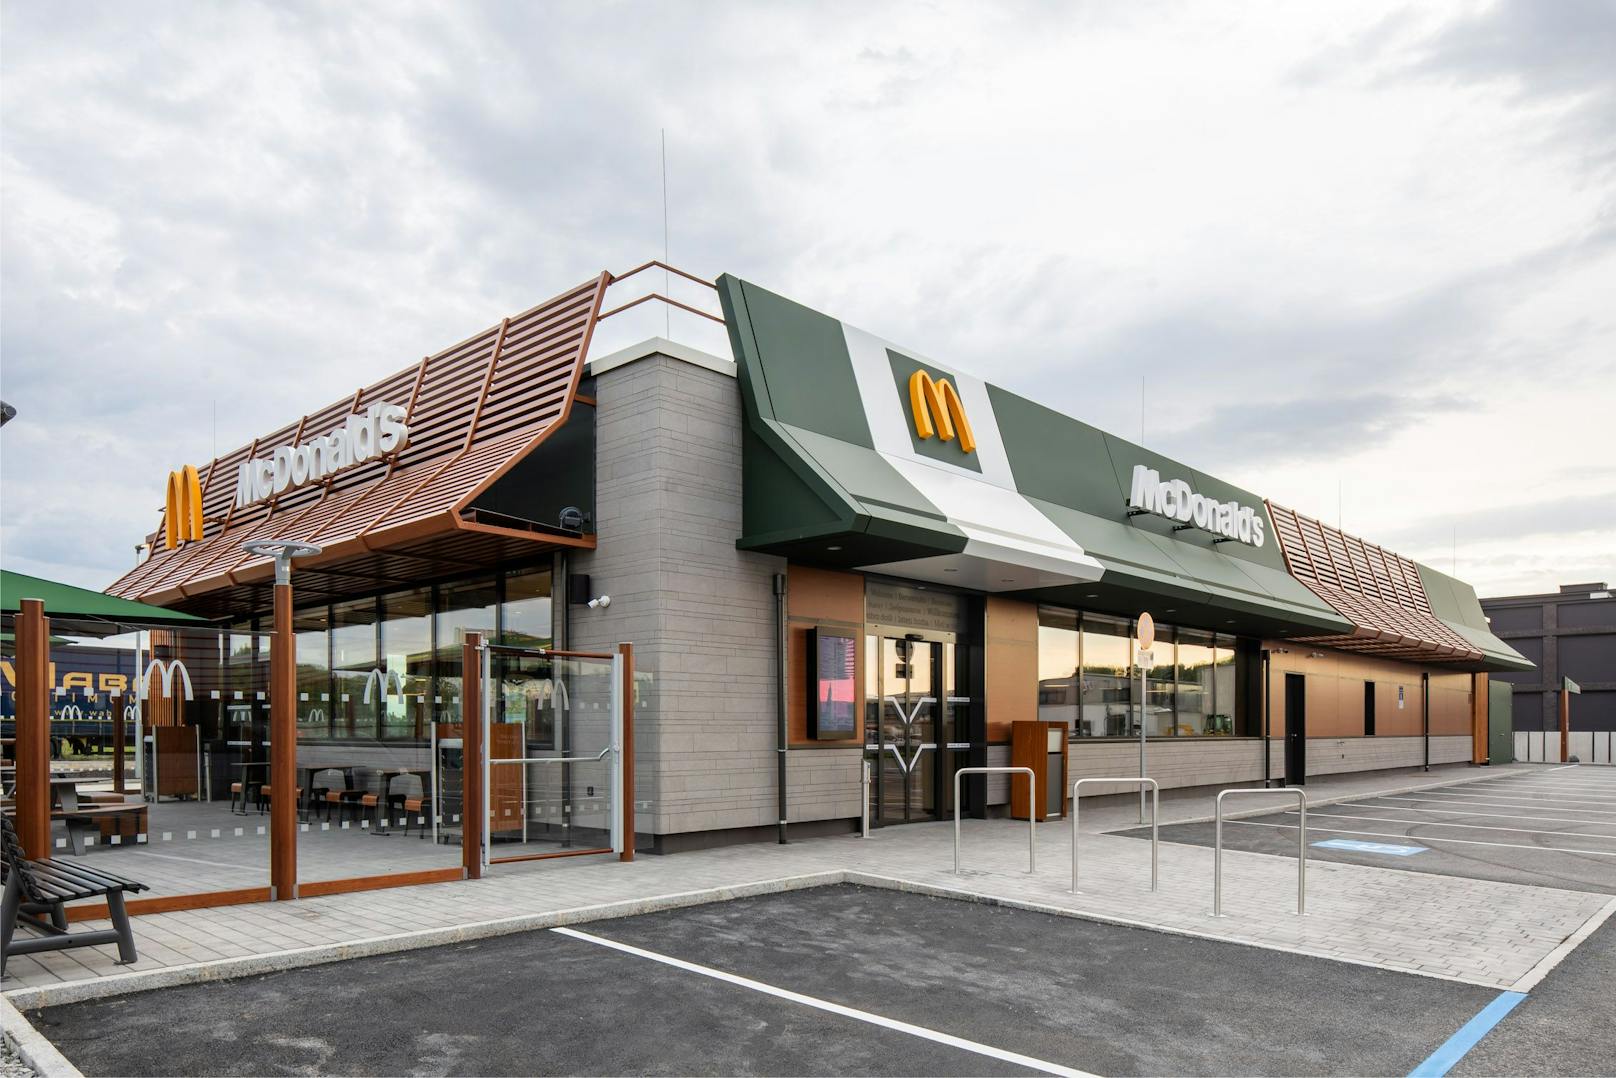 50 neue Jobs! McDonald's in Ebreichsdorf eröffnet